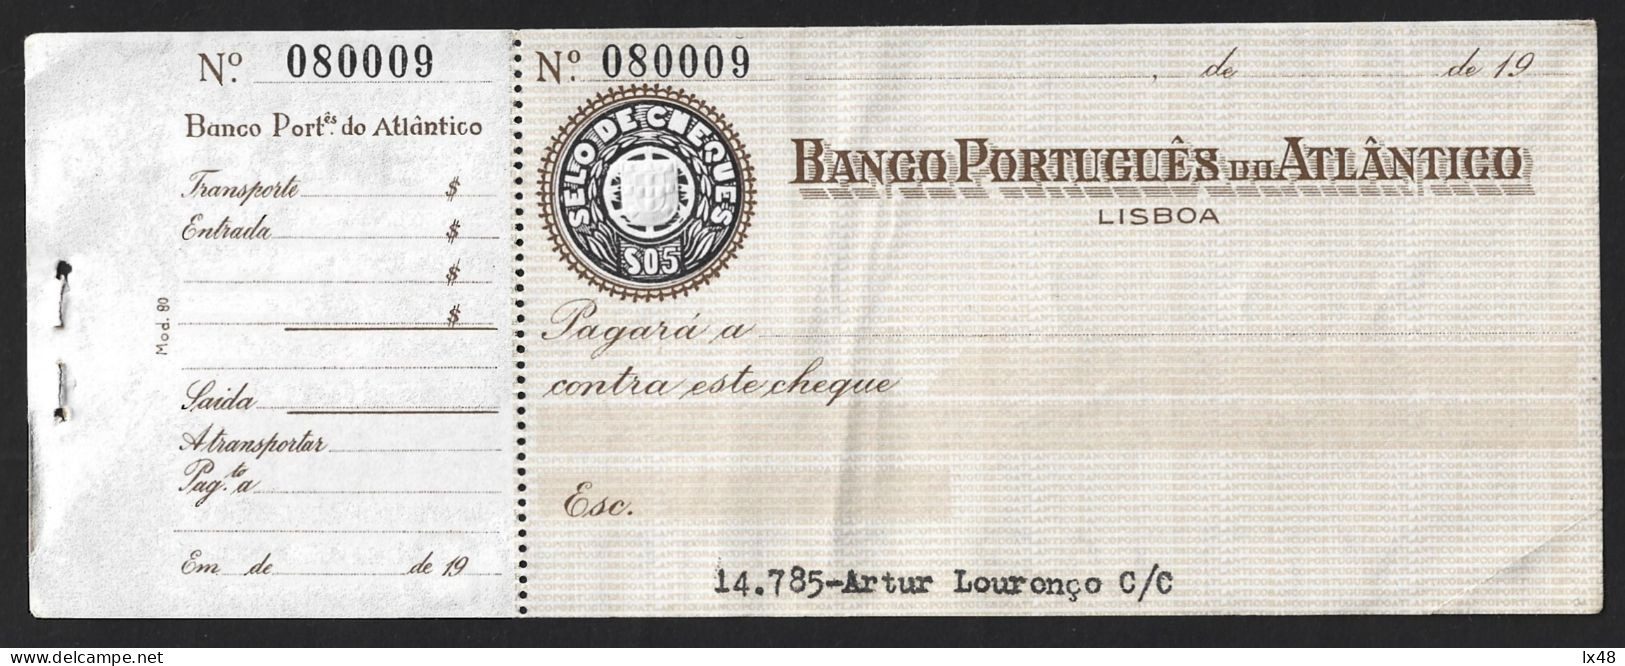 BPA Check. Banco Português Do Atlântico, Lisbon. $05 Check Stamp. BPA-controle. Banco Português Do Atlântico, Lissabon. - Cheques En Traveller's Cheques